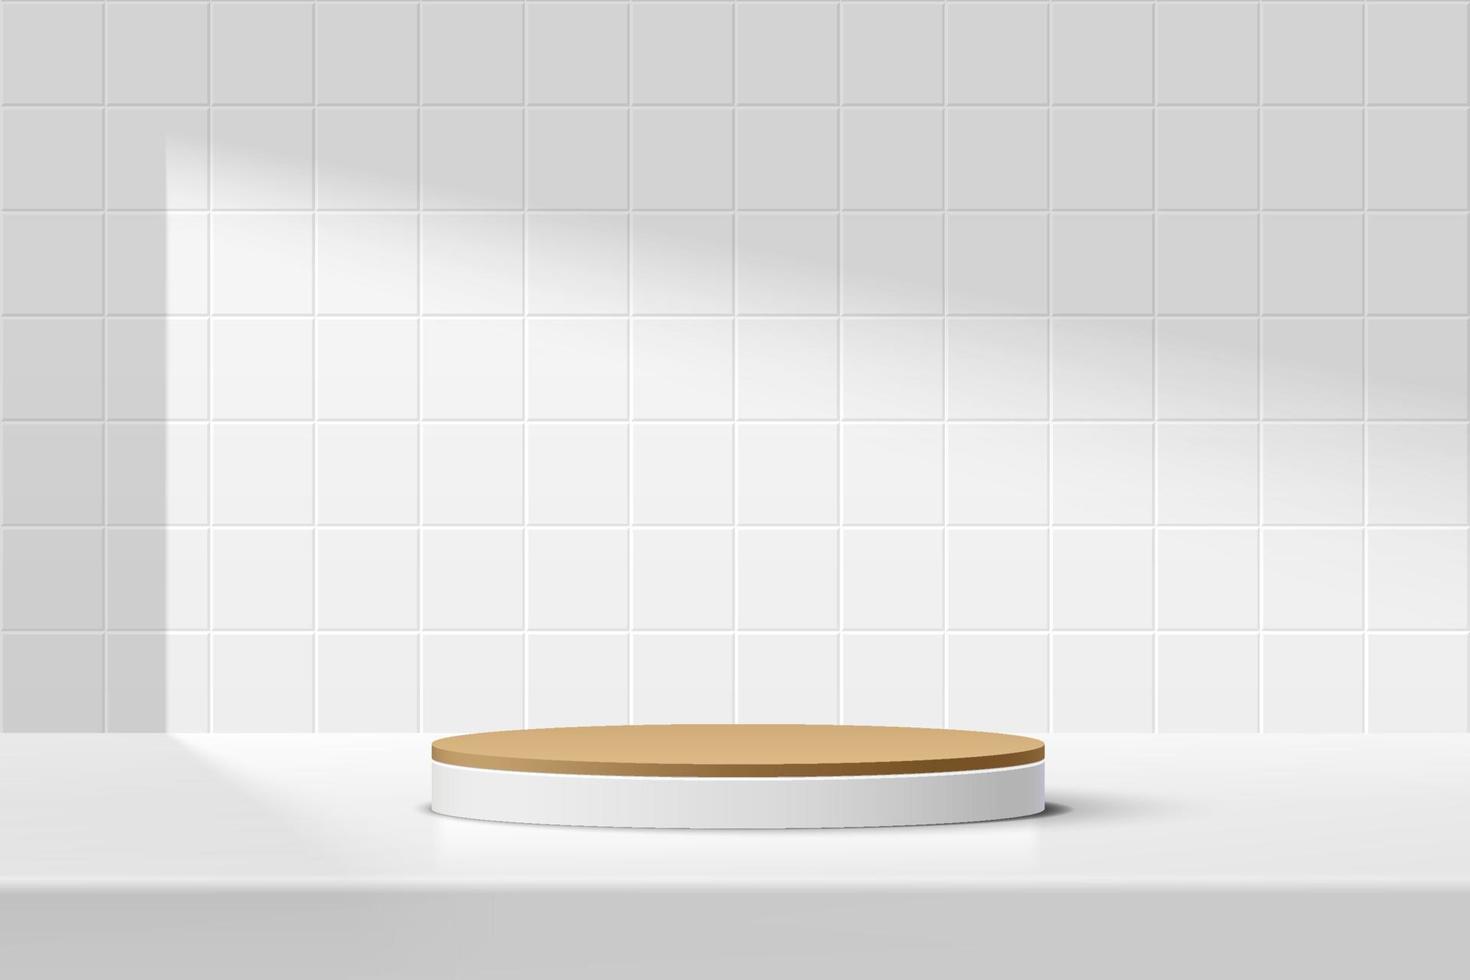 podium de piédestal de cylindre blanc et marron abstrait 3d sur la table avec scène de mur de texture de carreaux carrés blancs. conception de plate-forme géométrique minimale de rendu vectoriel dans l'ombre pour la présentation de l'affichage du produit.